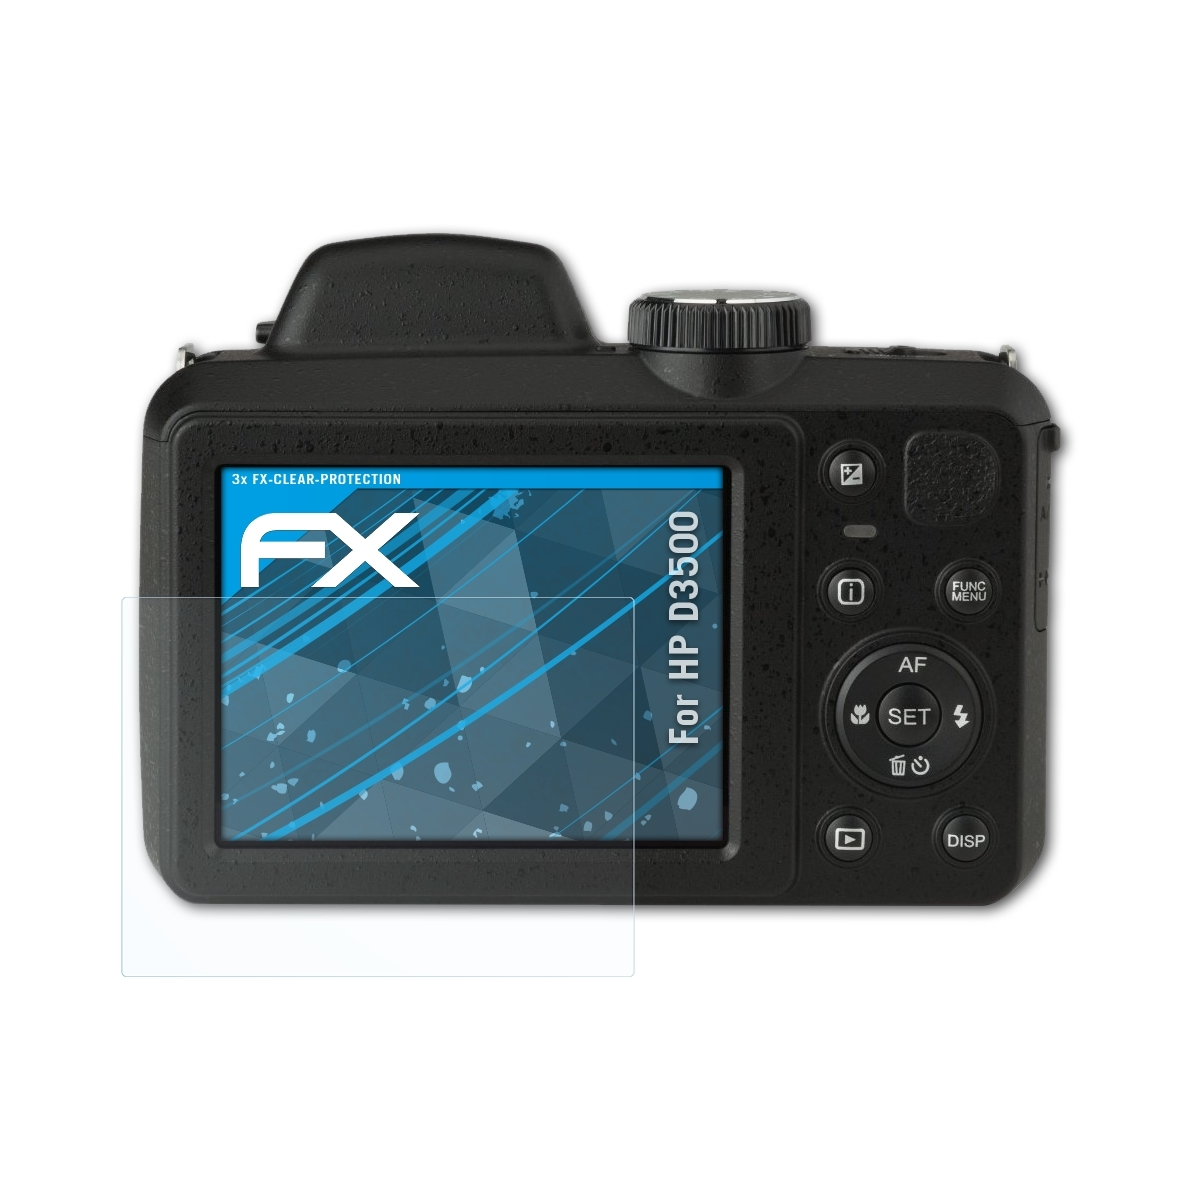 ATFOLIX 3x HP D3500) FX-Clear Displayschutz(für